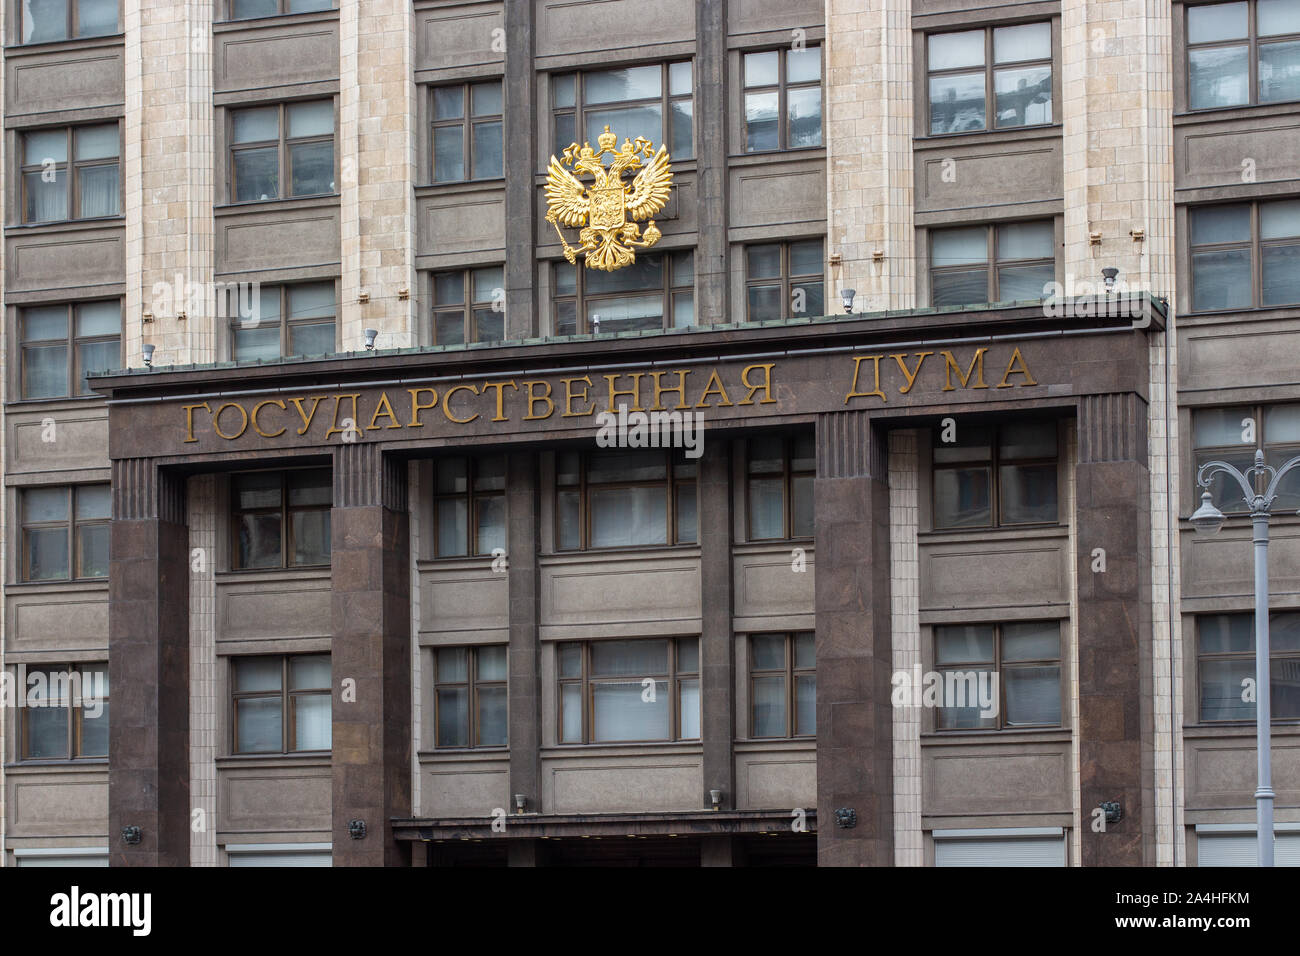 12-10-2019, Moscú, Rusia. La fachada del edificio de la Duma Estatal de la Federación de Rusia. El escudo de oro de Rusia un hea dos puntas Foto de stock